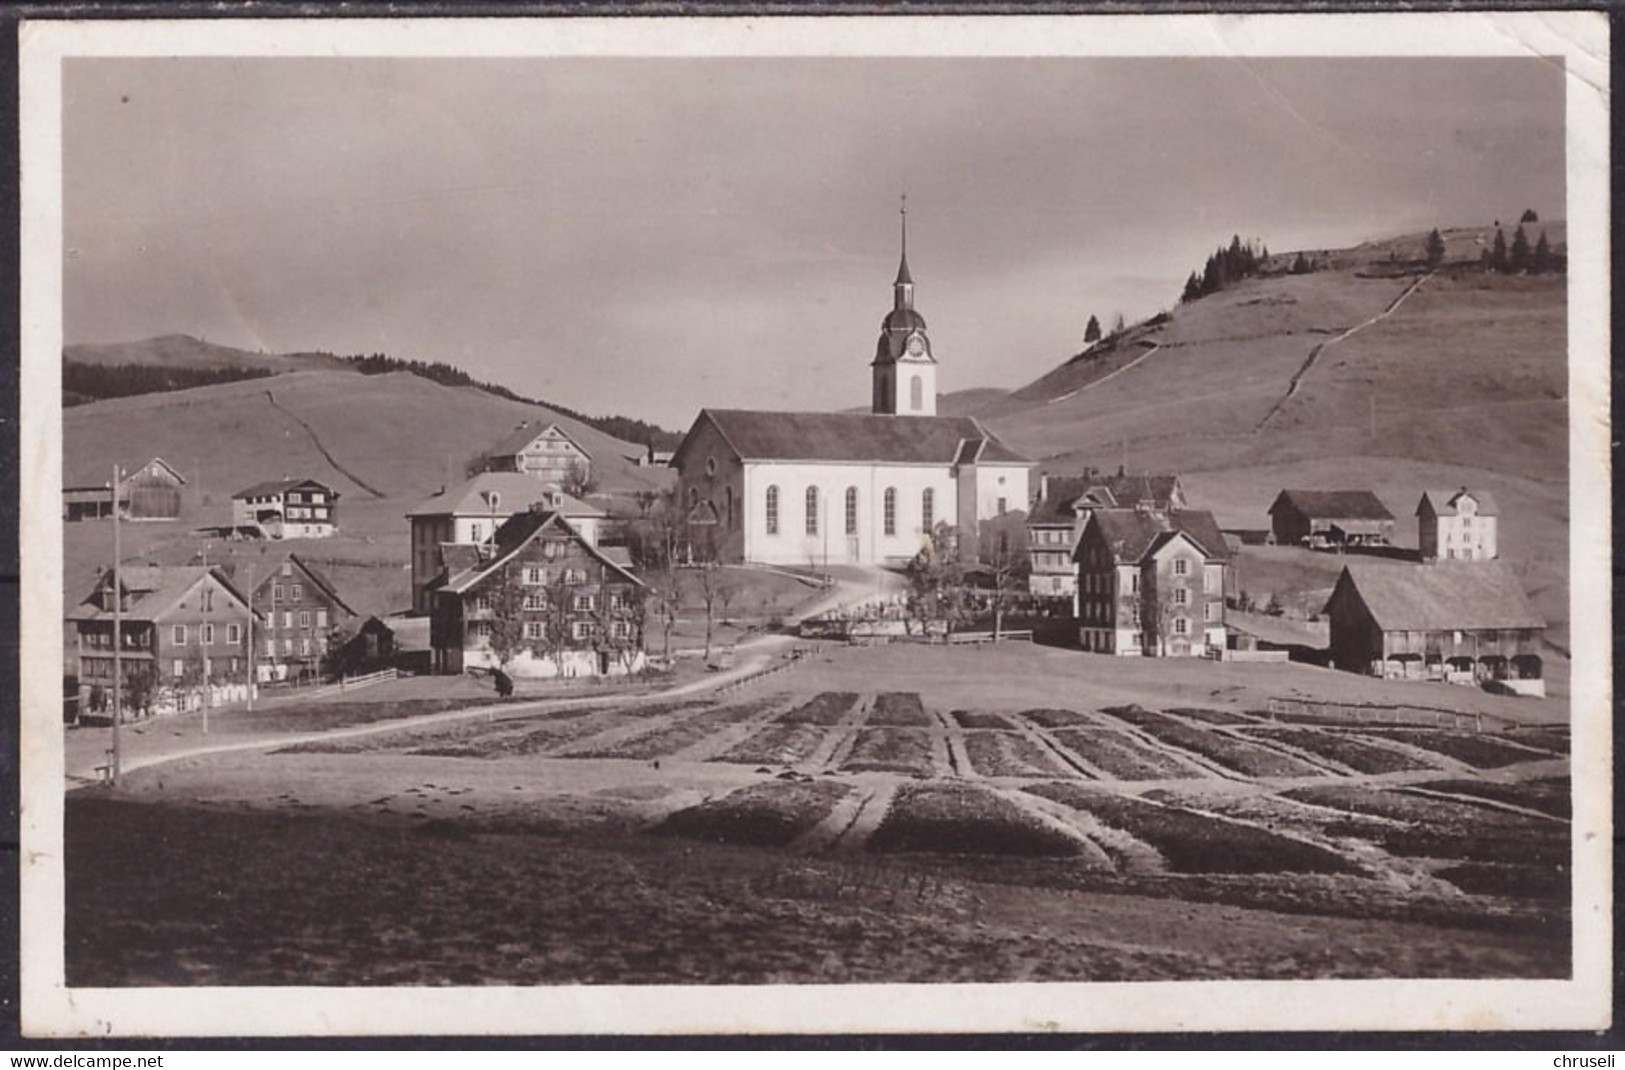 Oberiberg - Oberiberg